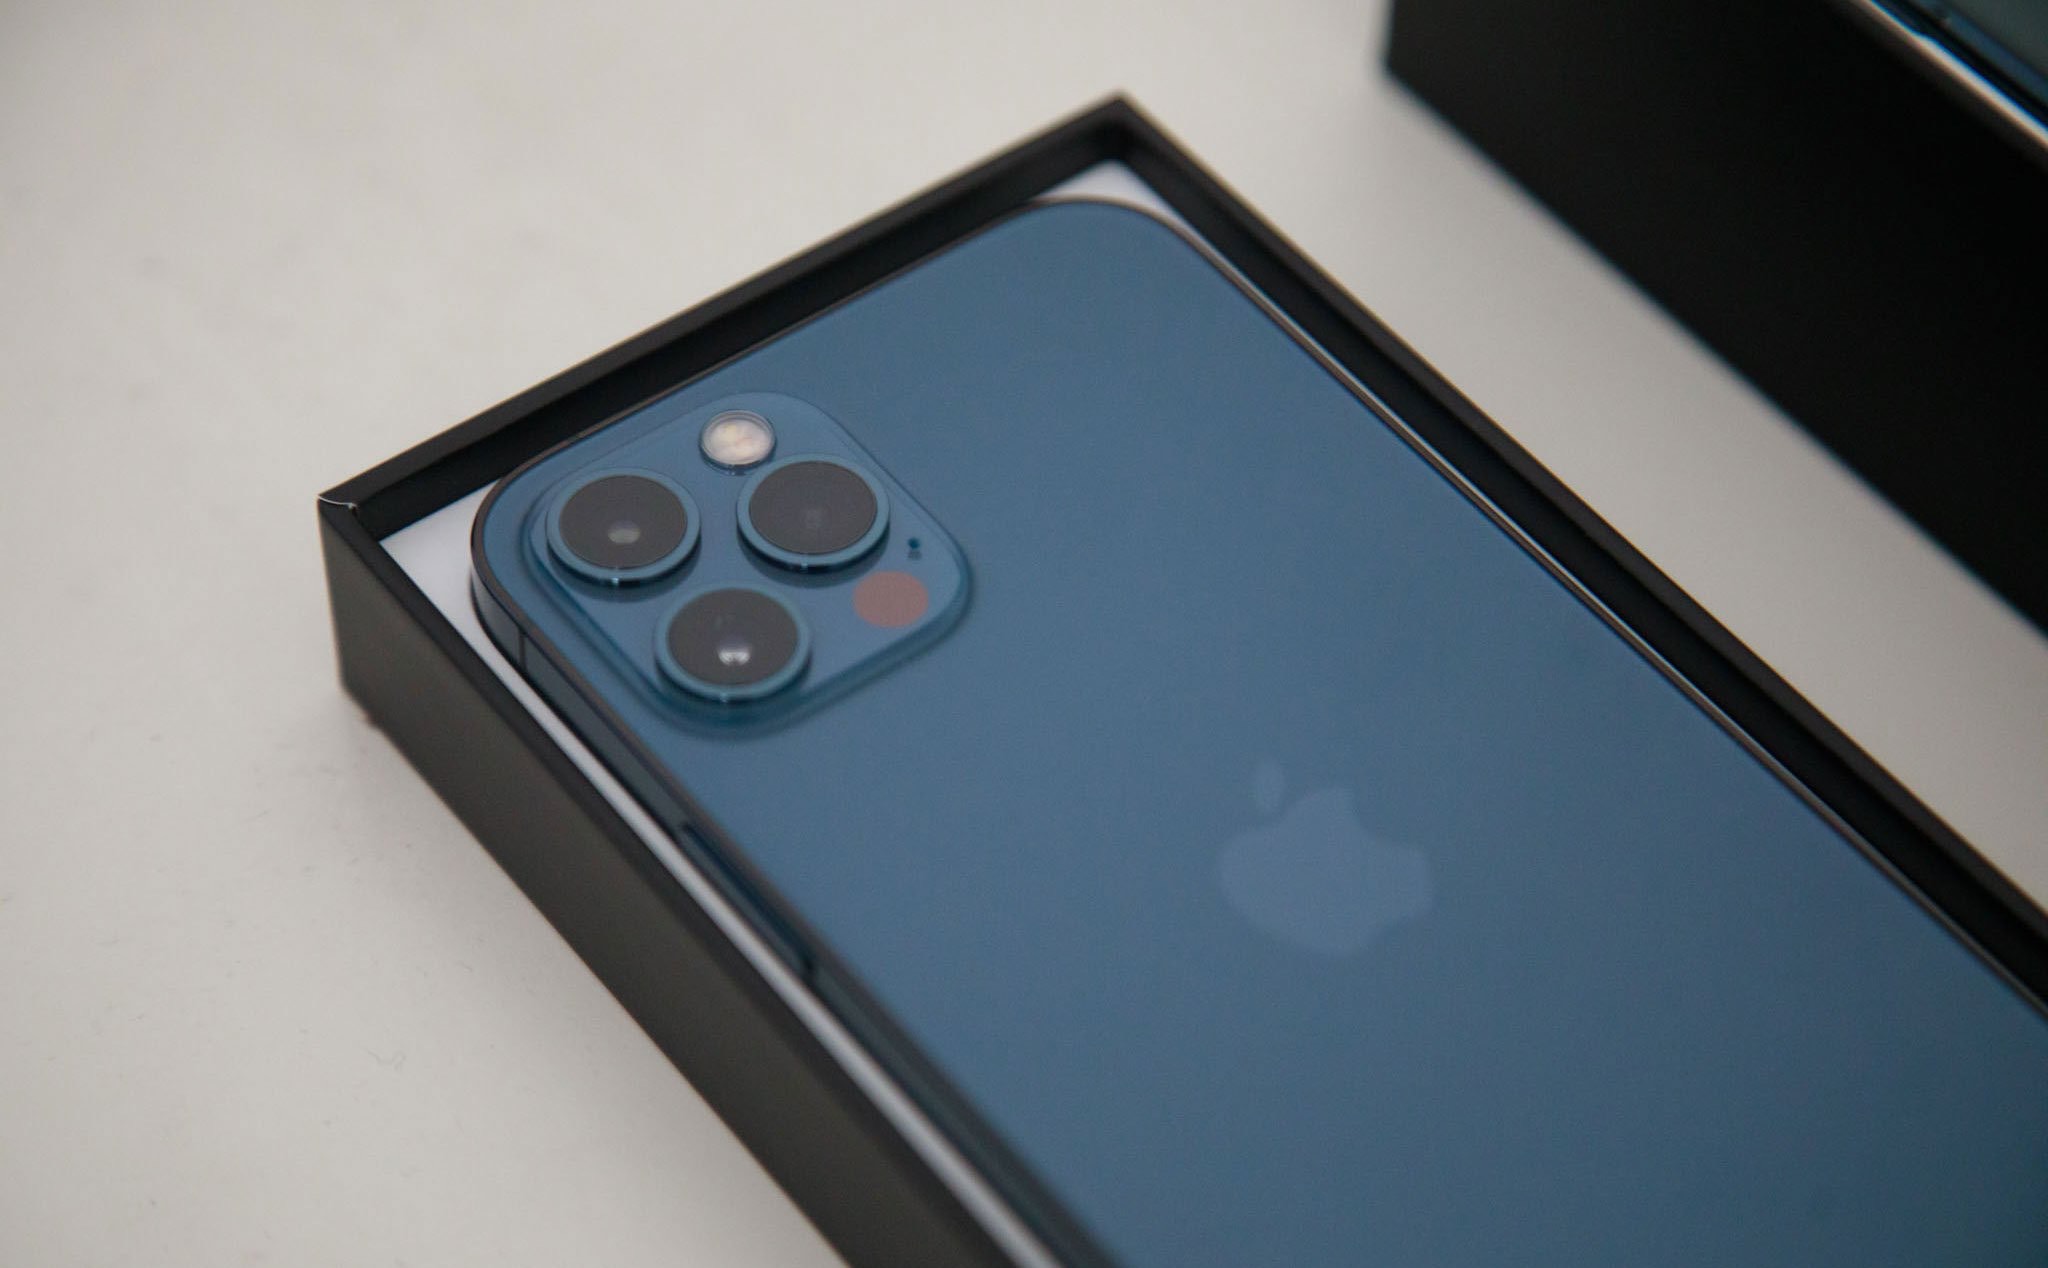 Chính thức đập hộp iPhone 12 Pro với màu xanh Pacific Blue bắt mắt